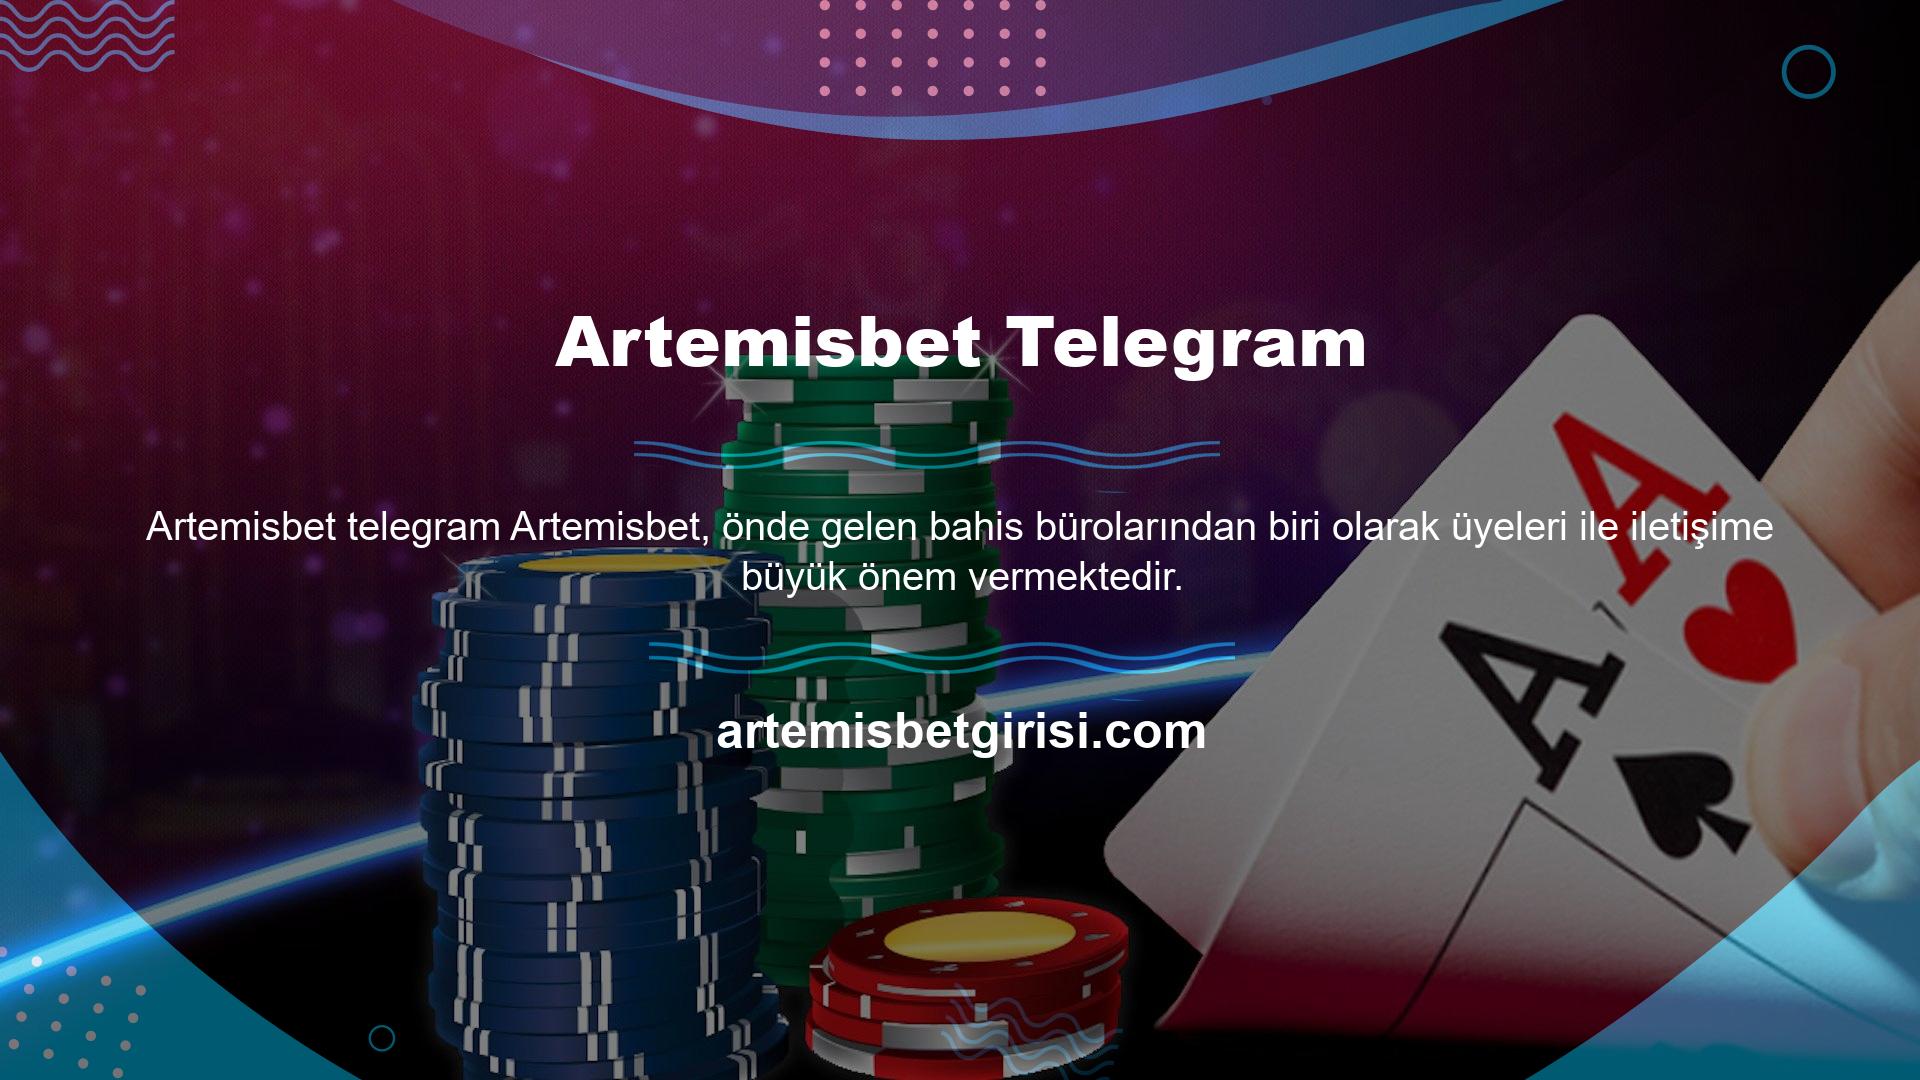 Bunun için çeşitli iletişim kanallarından Artemisbet destek ekibi ile iletişime geçebilirsiniz